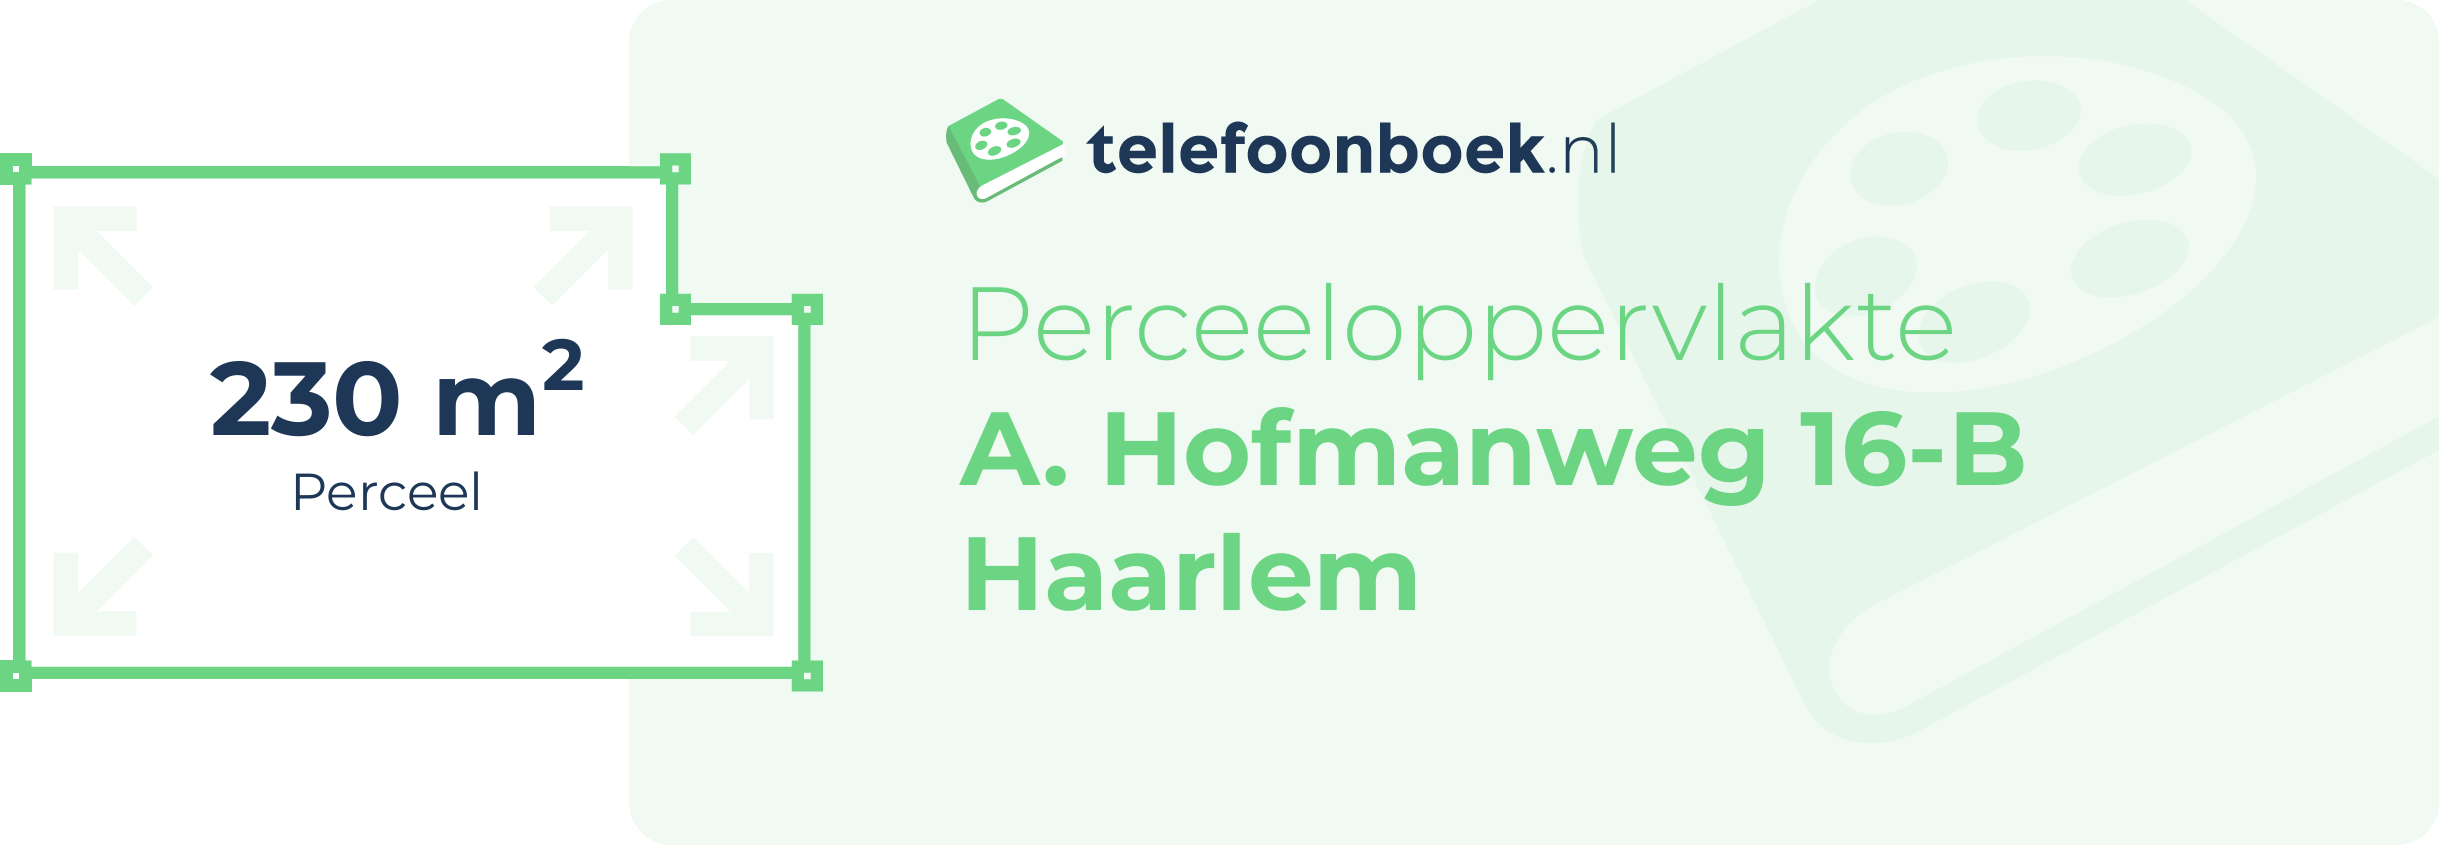 Perceeloppervlakte A. Hofmanweg 16-B Haarlem